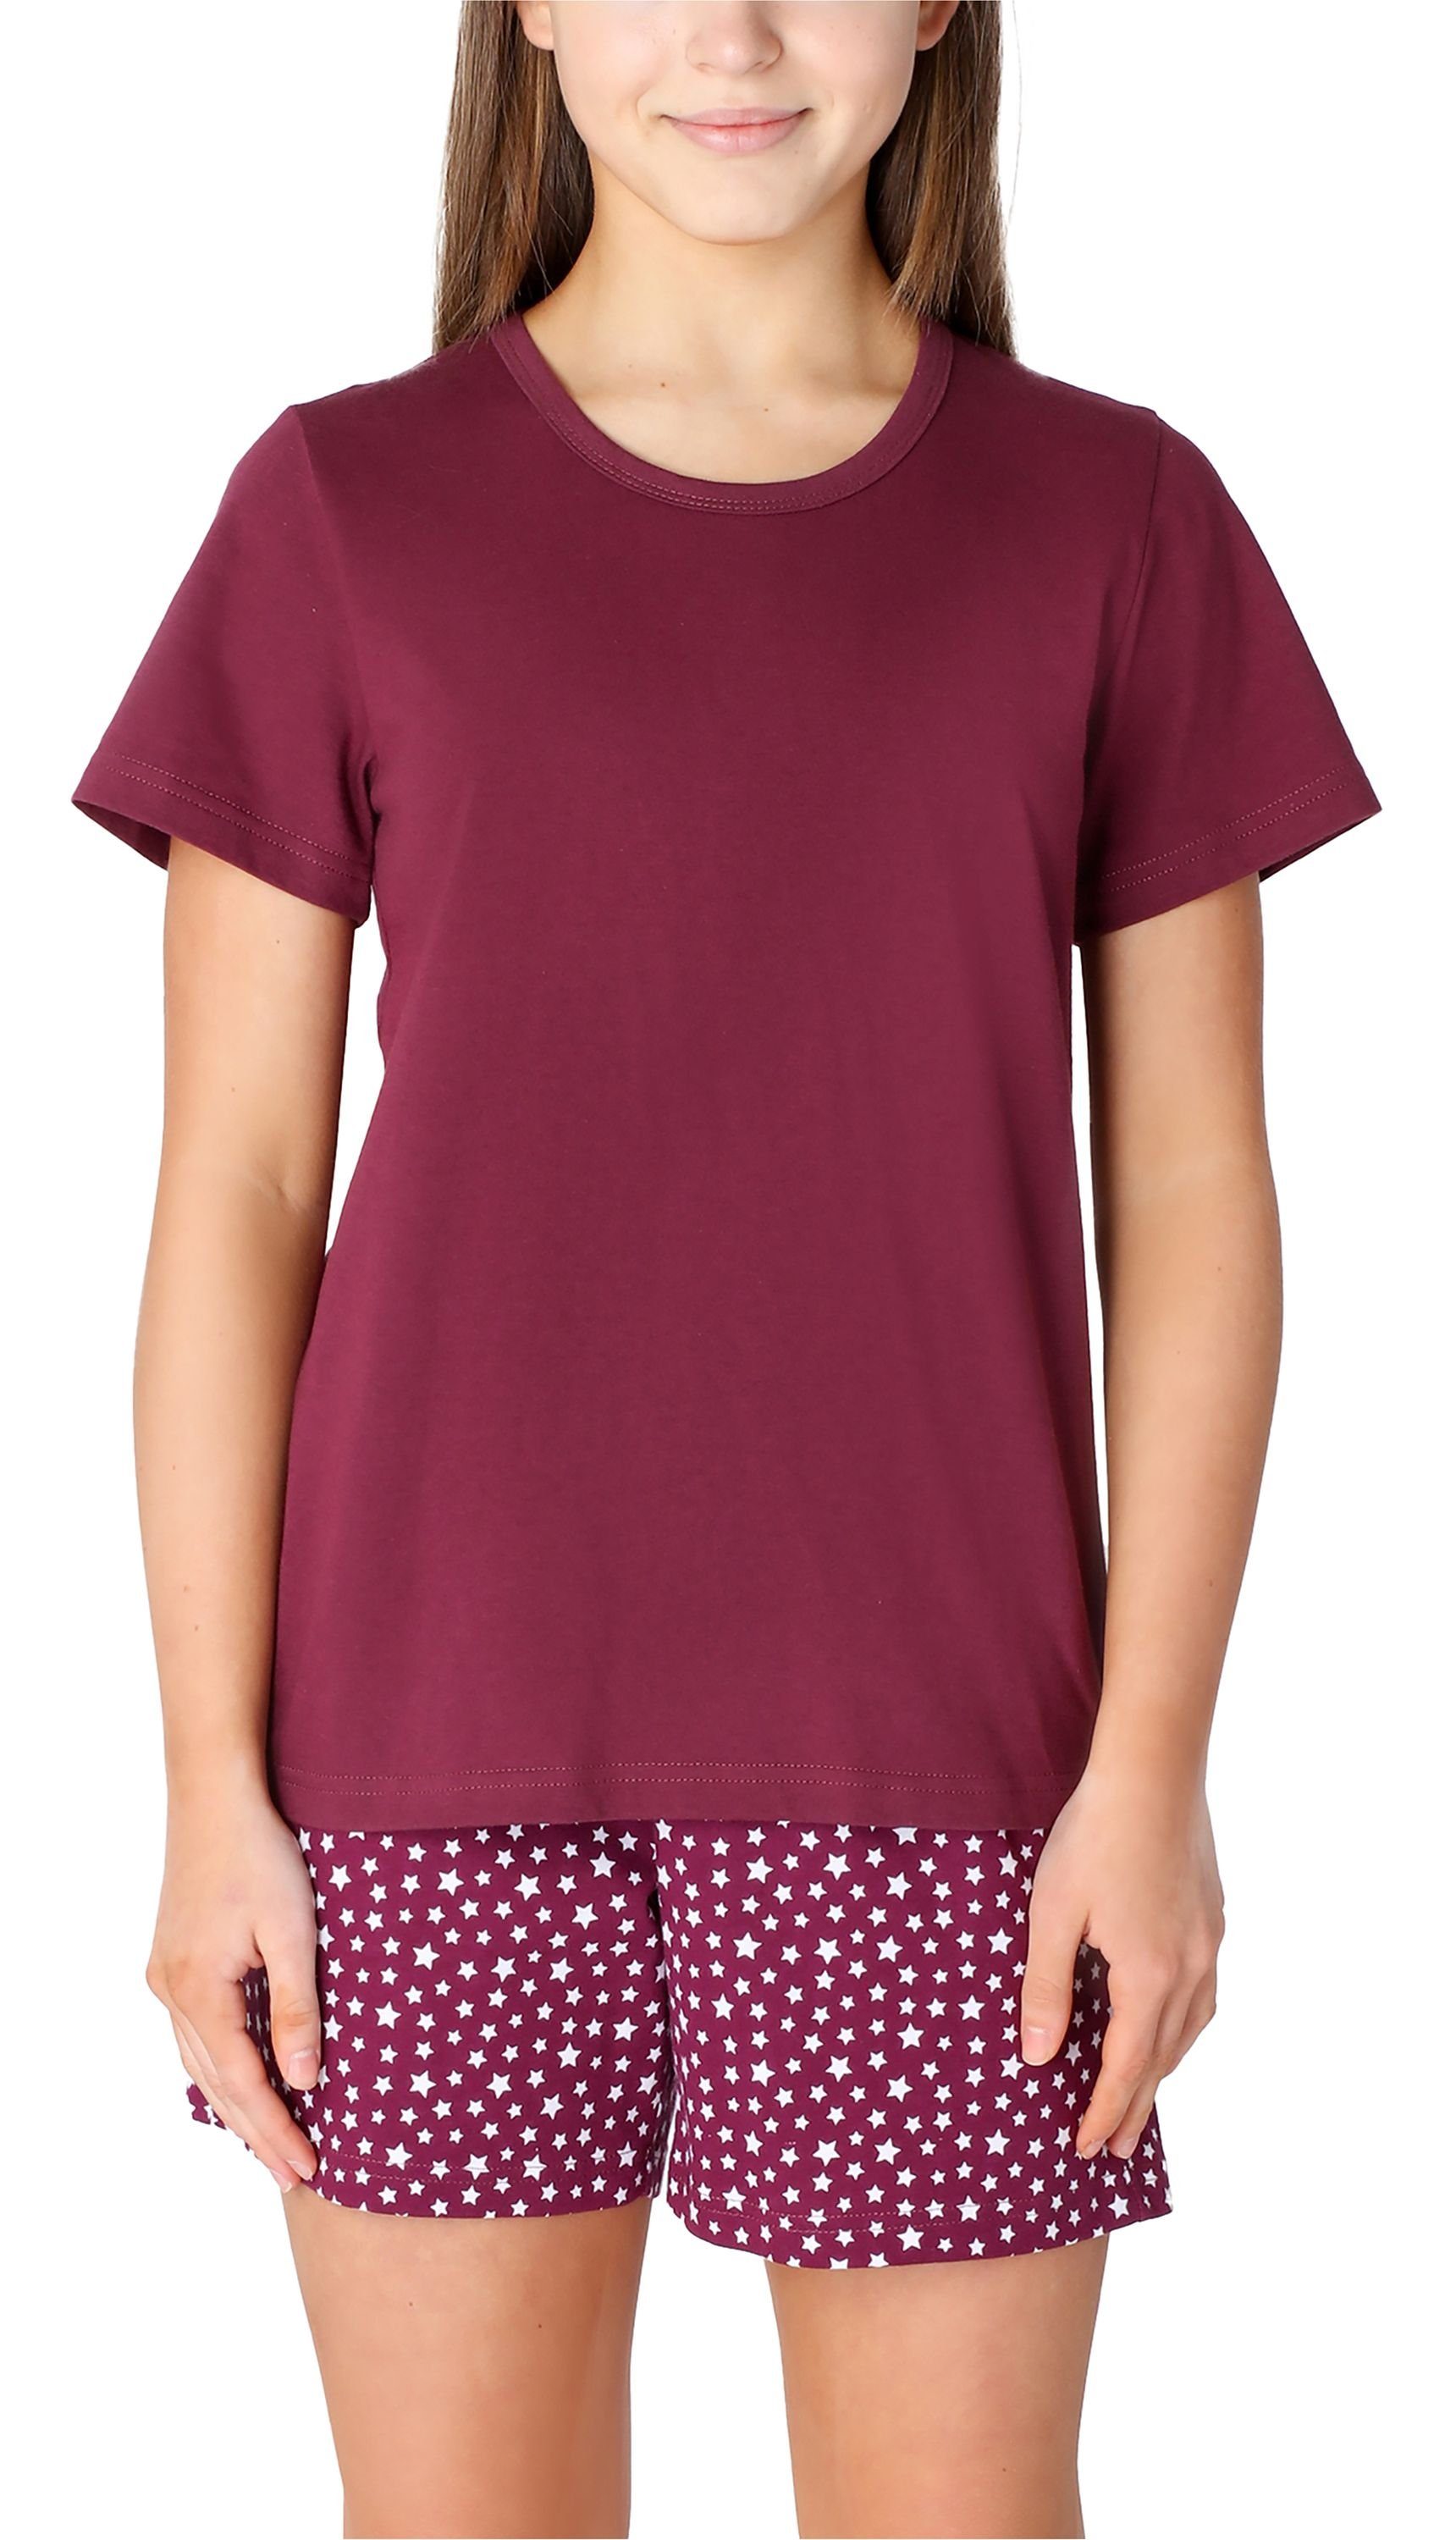 Merry Style Schlafanzug Mädchen Schlafanzüge Kurz aus Baumwolle Pyjama Set MS10-265 Rotwein/Sterne